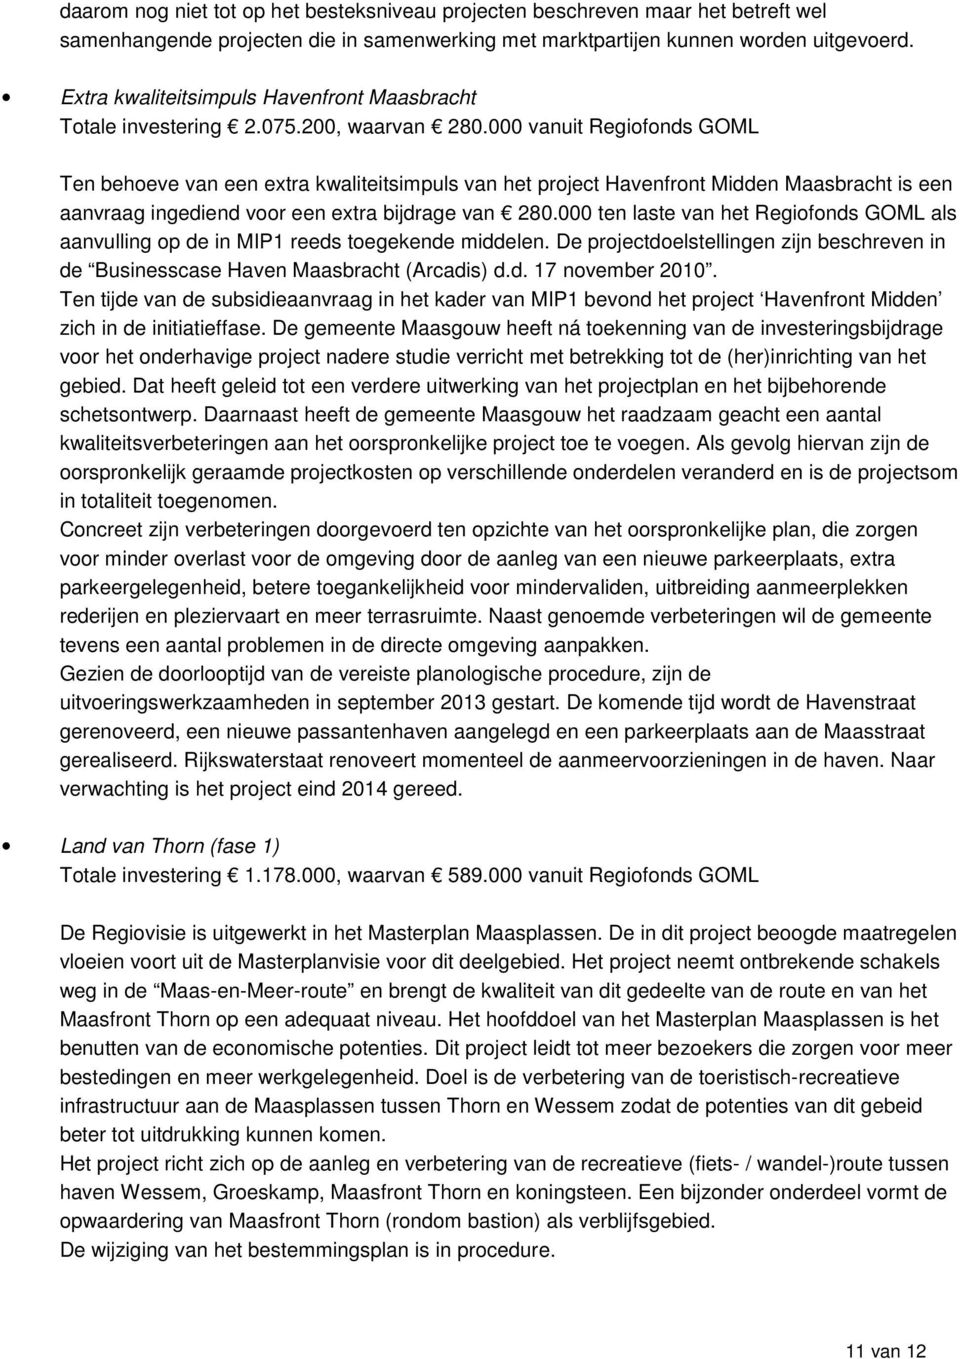 000 vanuit Regiofonds GOML Ten behoeve van een extra kwaliteitsimpuls van het project Havenfront Midden Maasbracht is een aanvraag ingediend voor een extra bijdrage van 280.